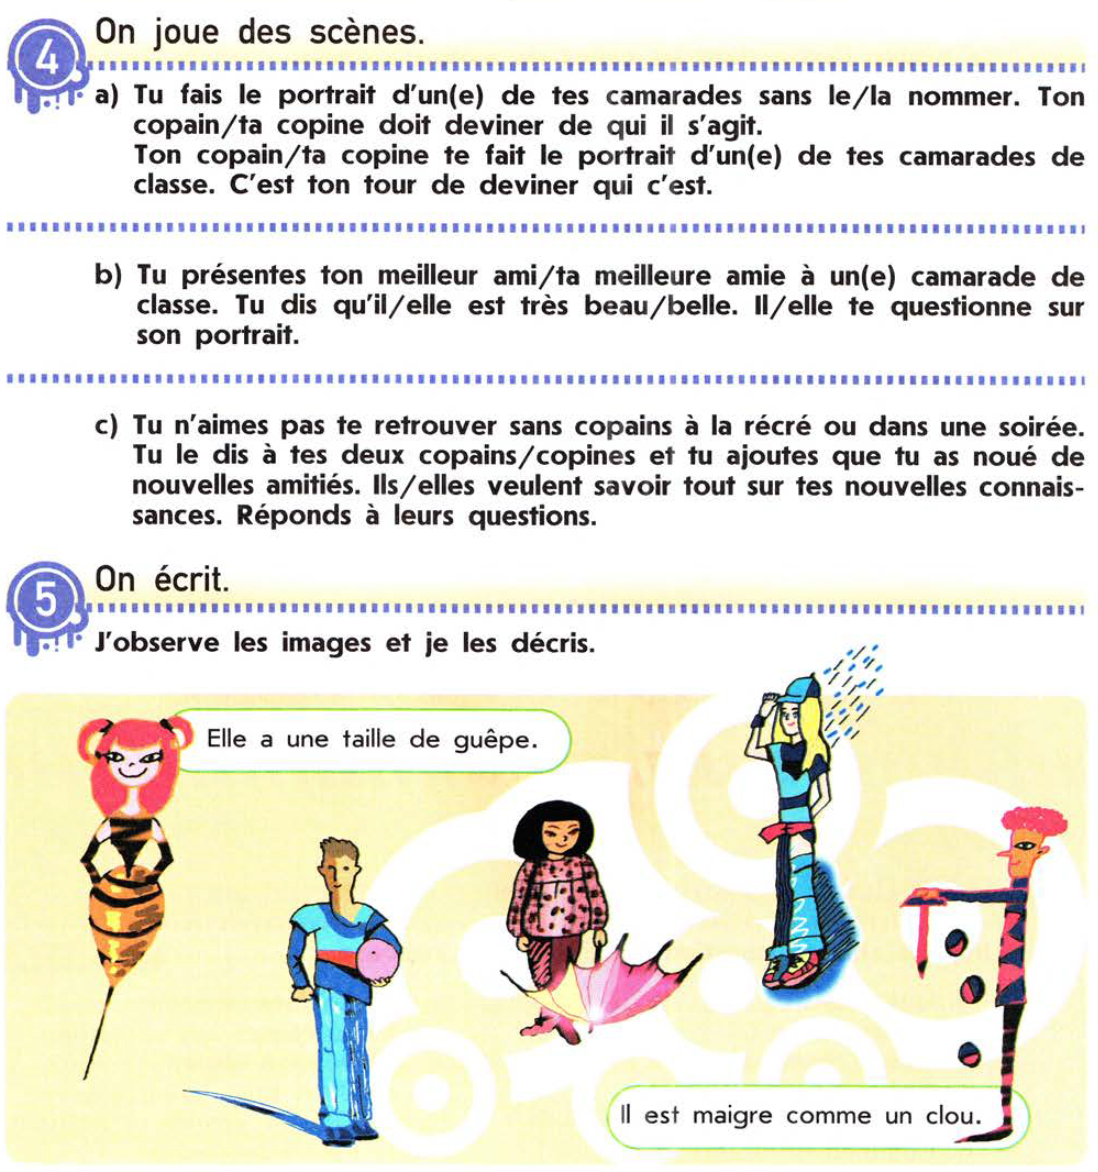 Страничка из учебника Le Français C est Super! для 7 класса